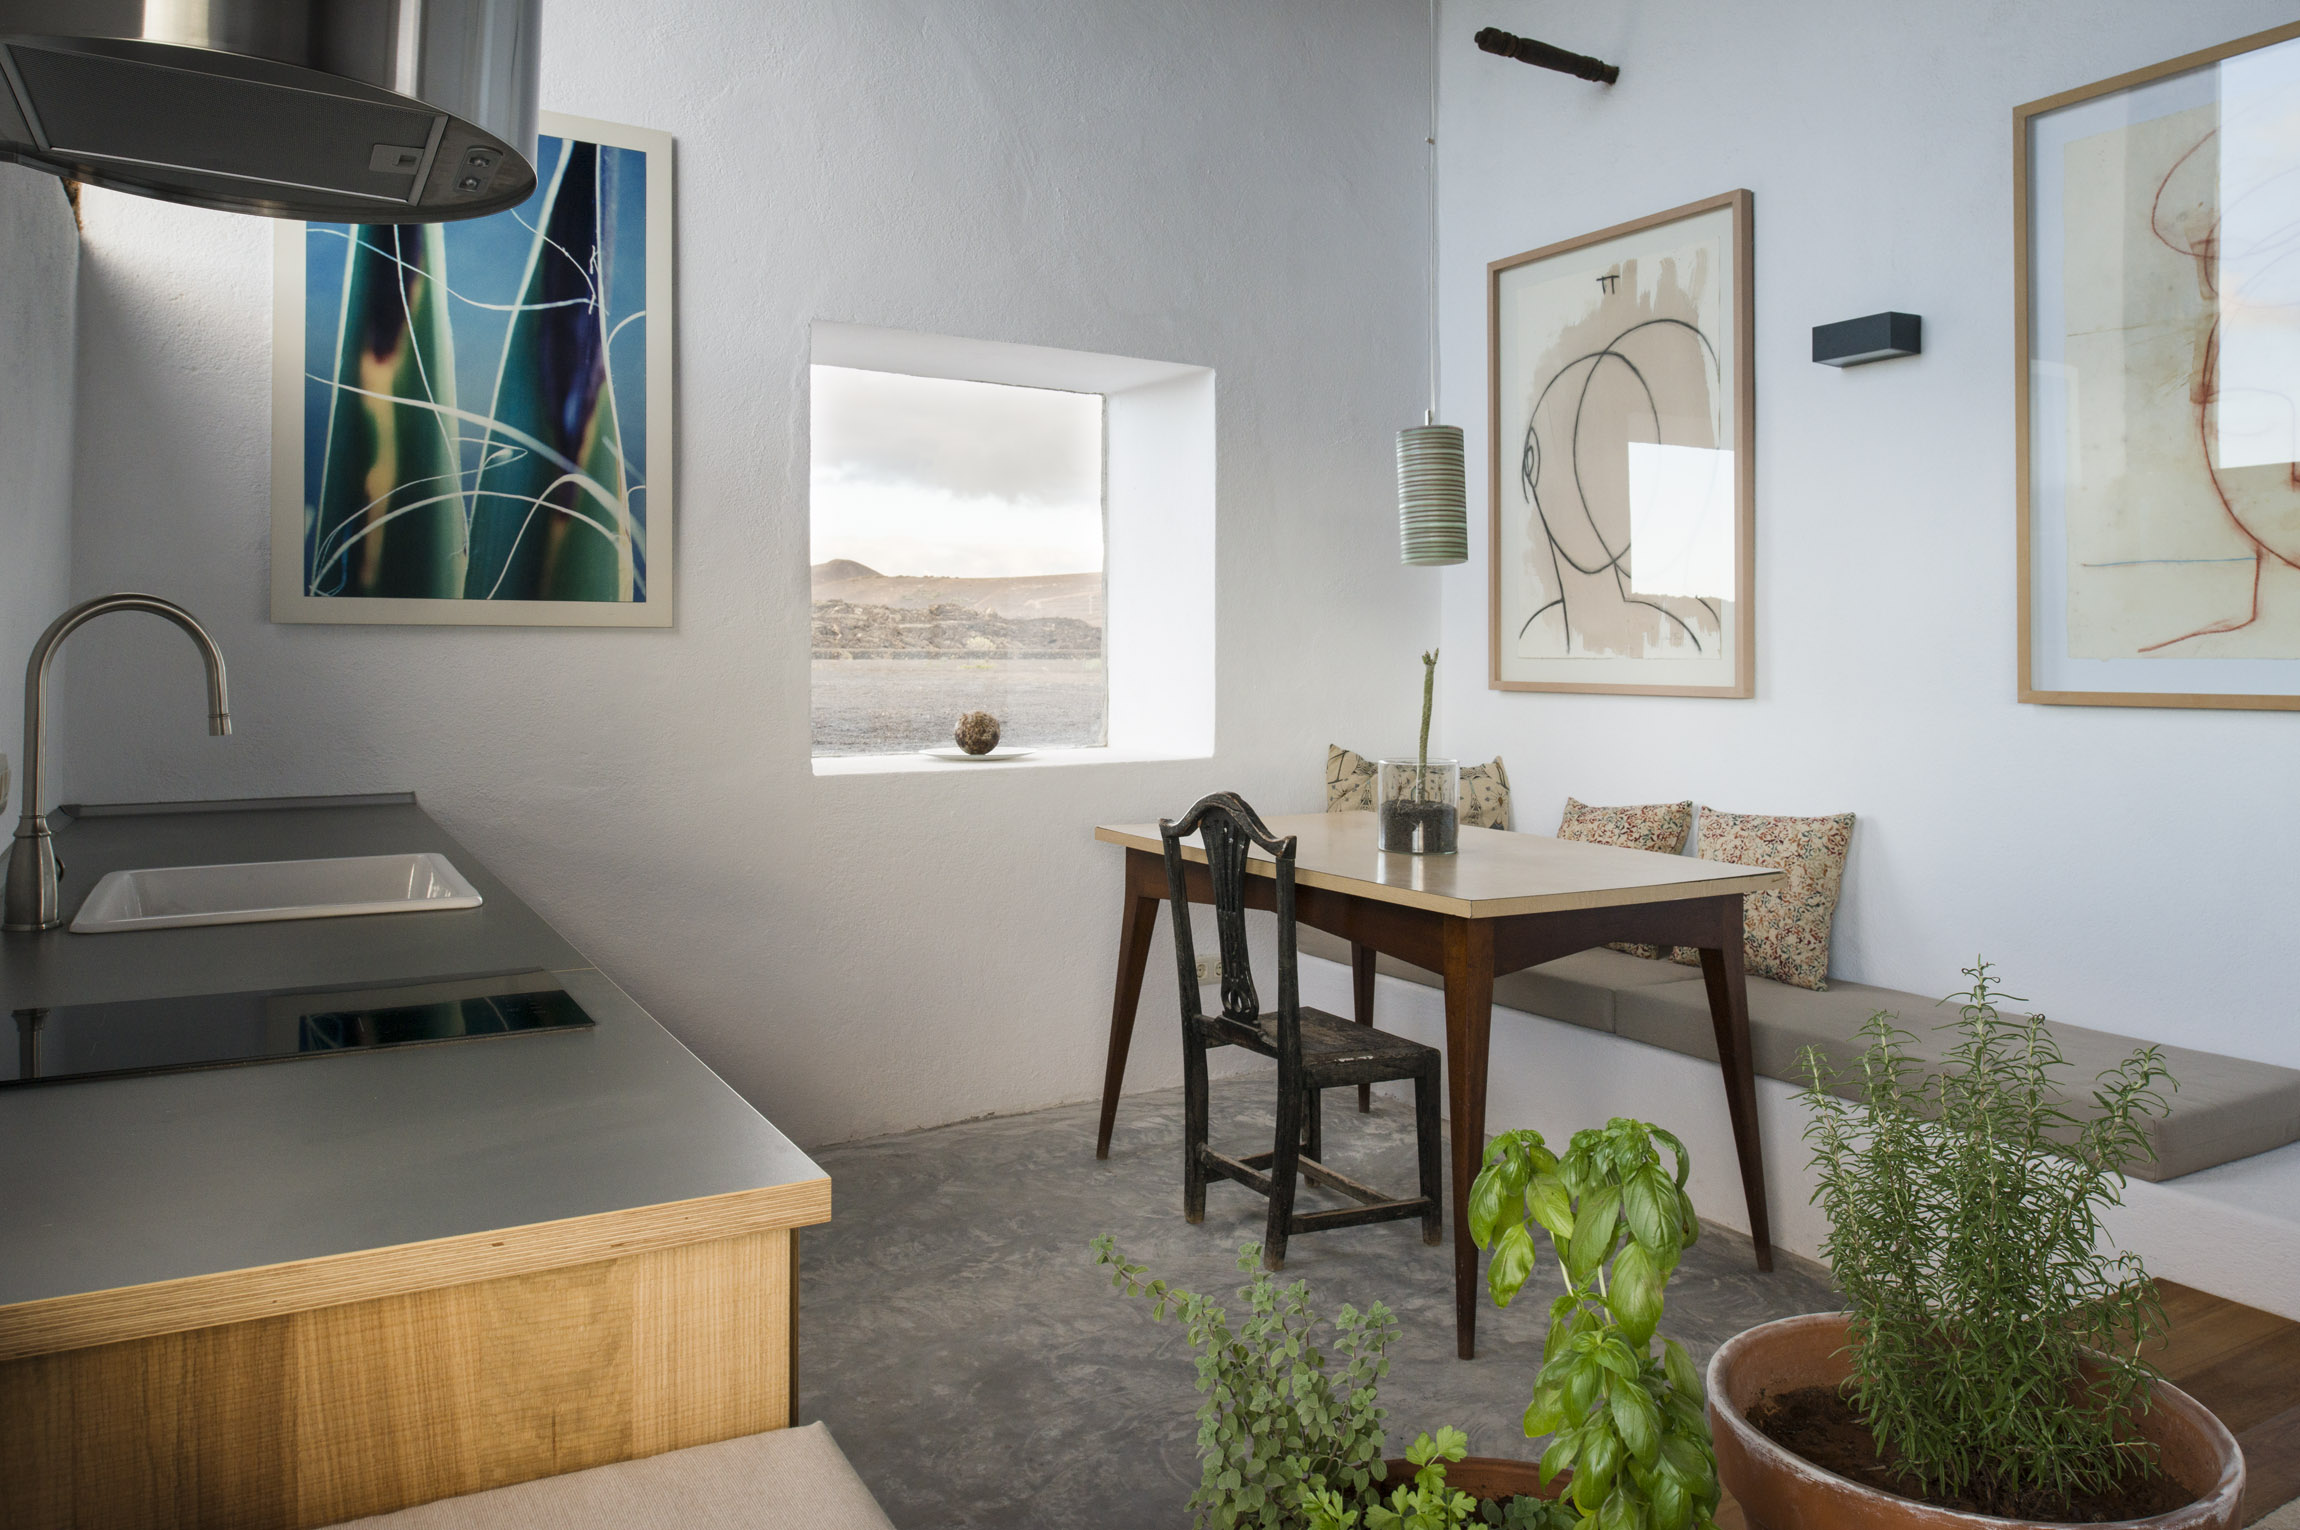 Buenavista Lanzarote Country Suites Casa Este livingroom kitchen